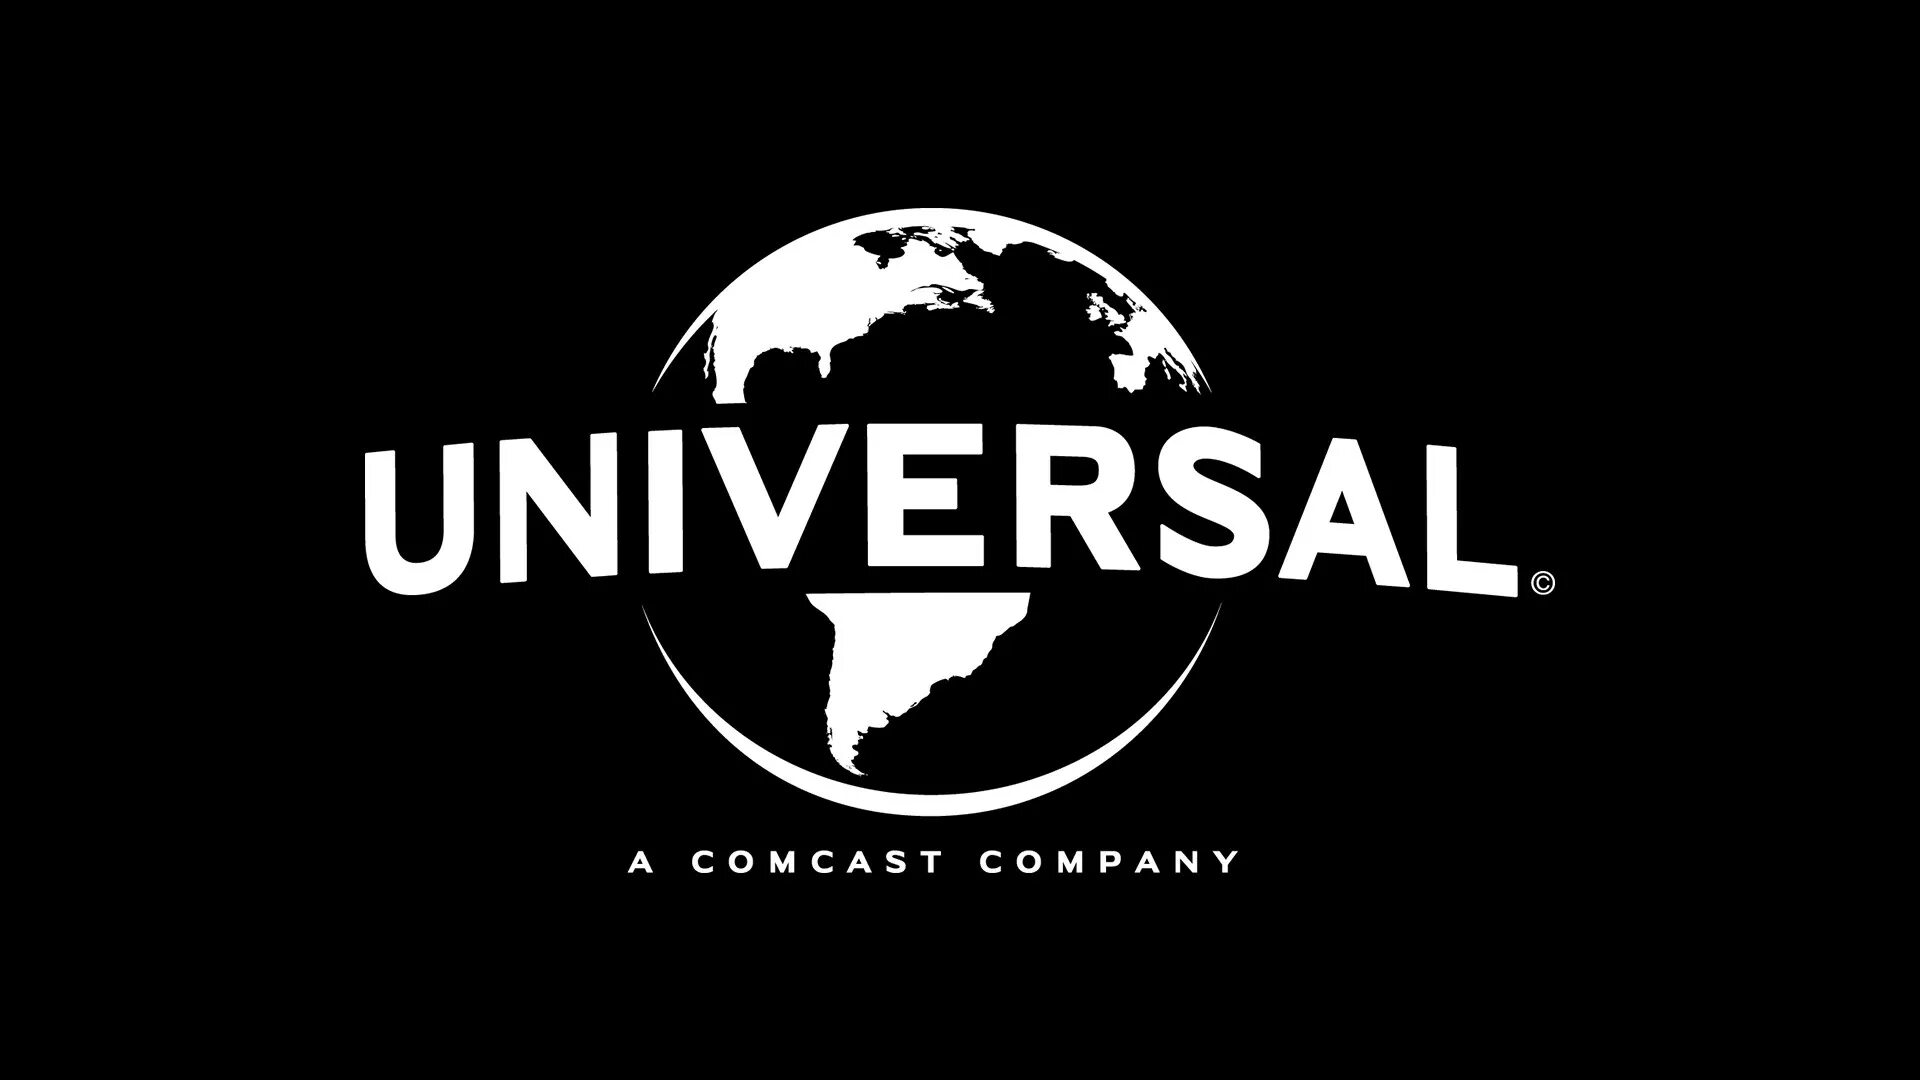 Кинокомпания pictures. Юниверсал киностудия логотип. Кинокомпания Universal pictures. Логотип компании Юниверсал пикчерс. Юнивёрсал пикчерс логотип 1912.